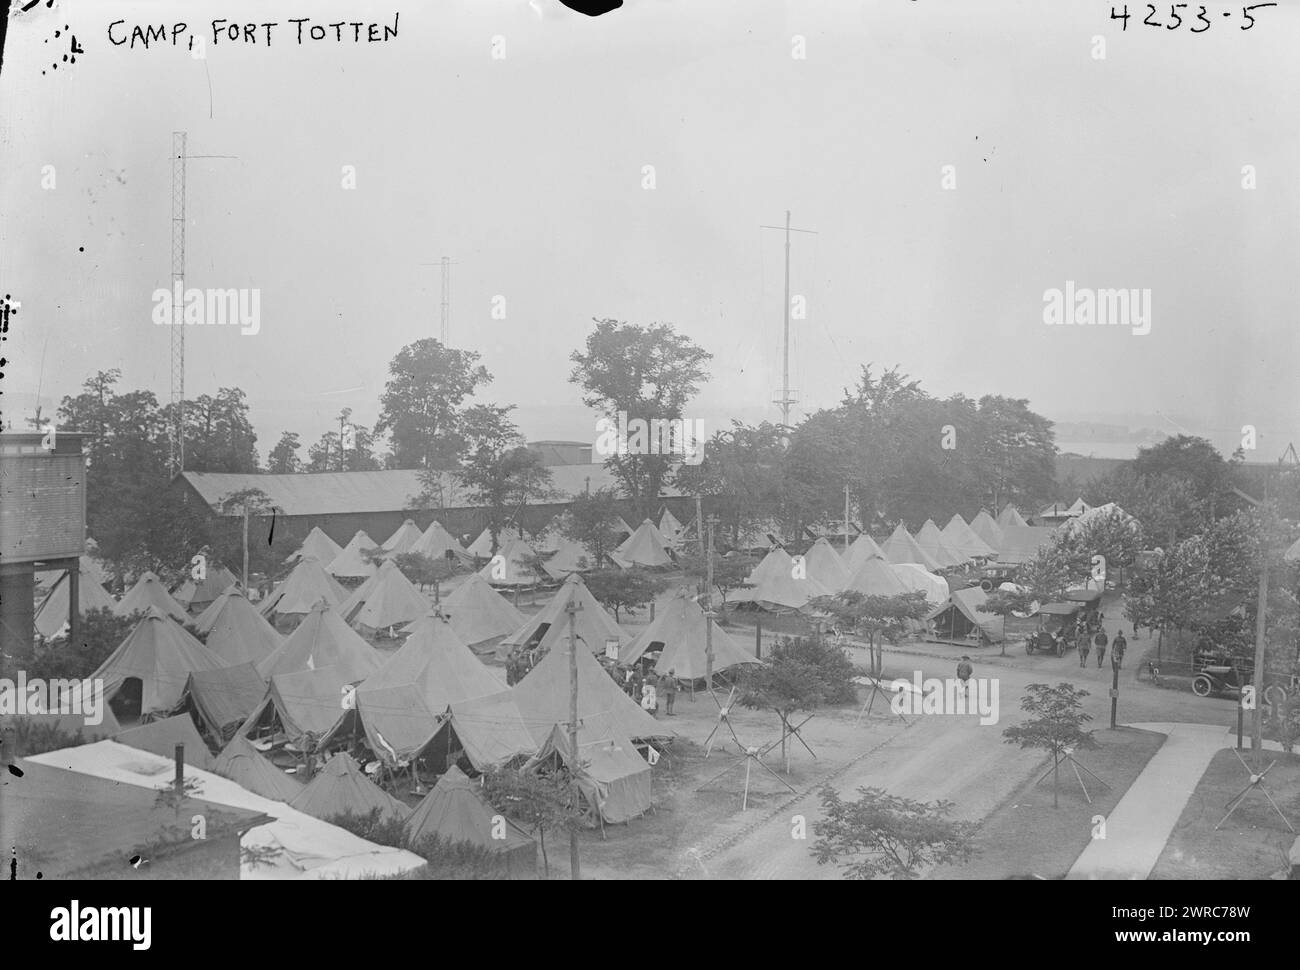 Camp, Fort Totten, photographie montre le camp militaire à Fort Totten, Queens, New York City, pendant la première Guerre mondiale, 1917 ou 1918, Guerre mondiale, 1914-1918, négatifs en verre, 1 négatif : verre Banque D'Images